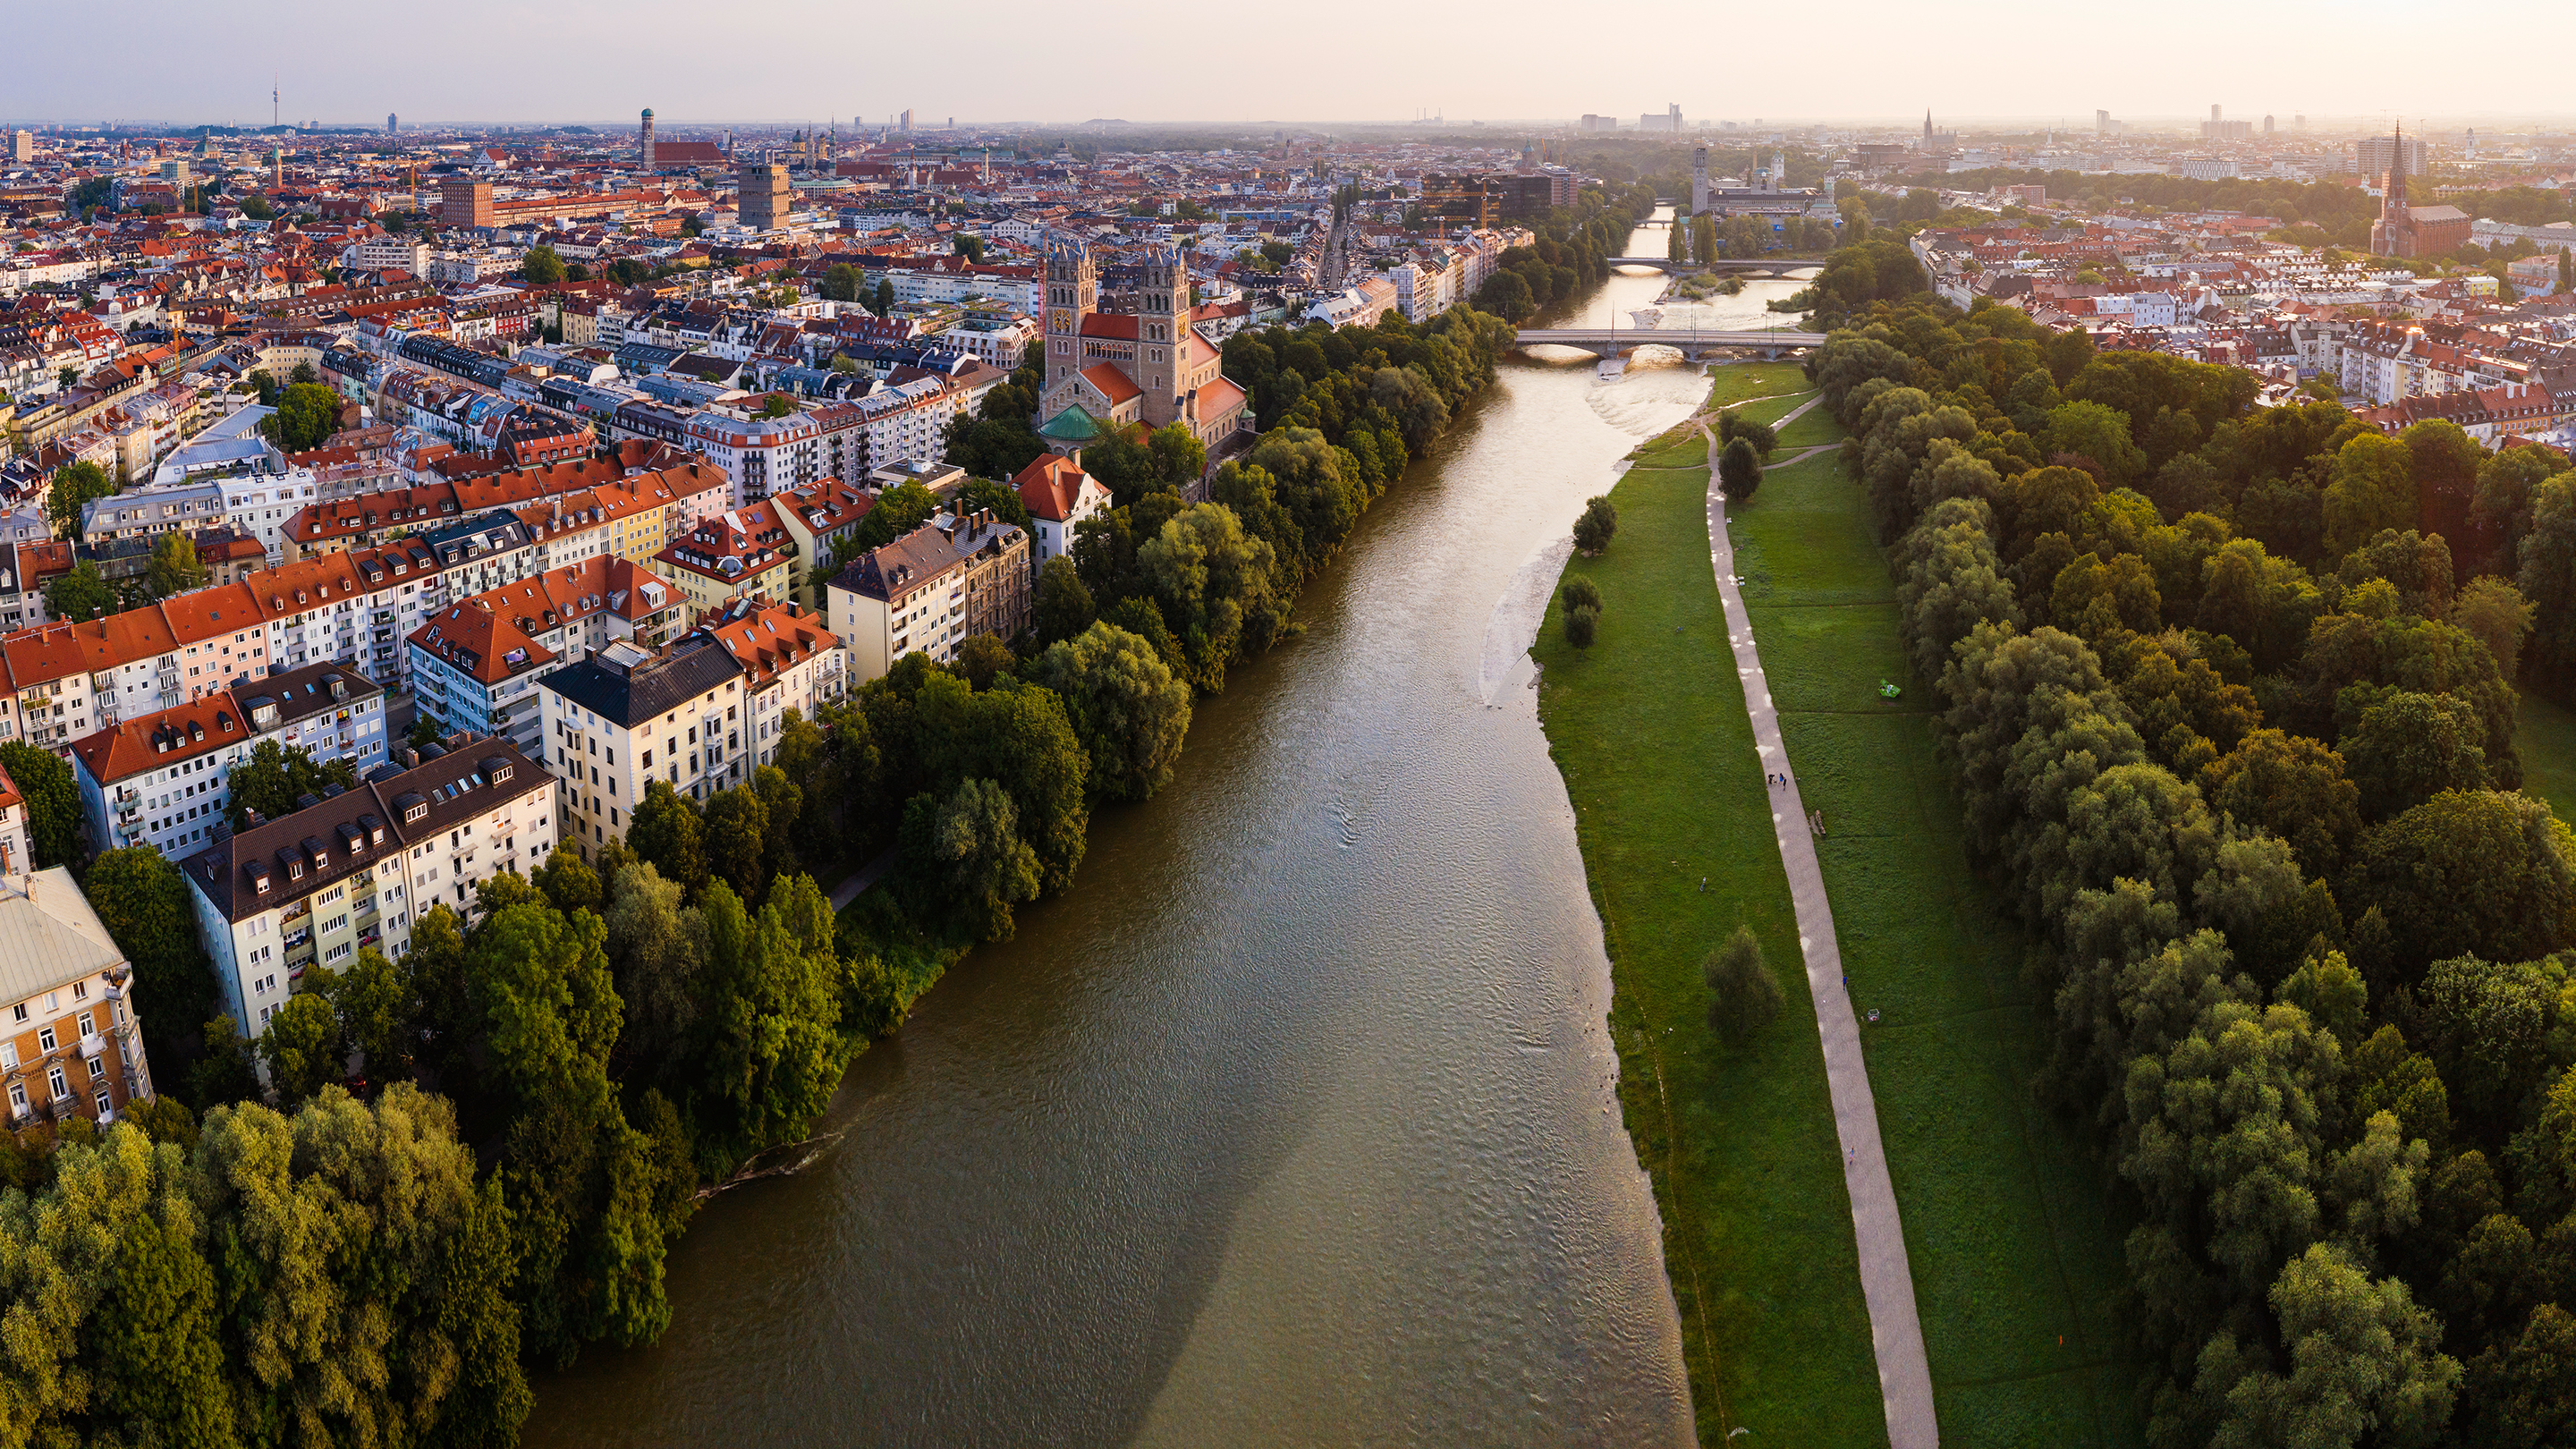 Luftaufnahme von München mit einem Fluss in der Mitte und einem Weg entlang des Flusslaufs.